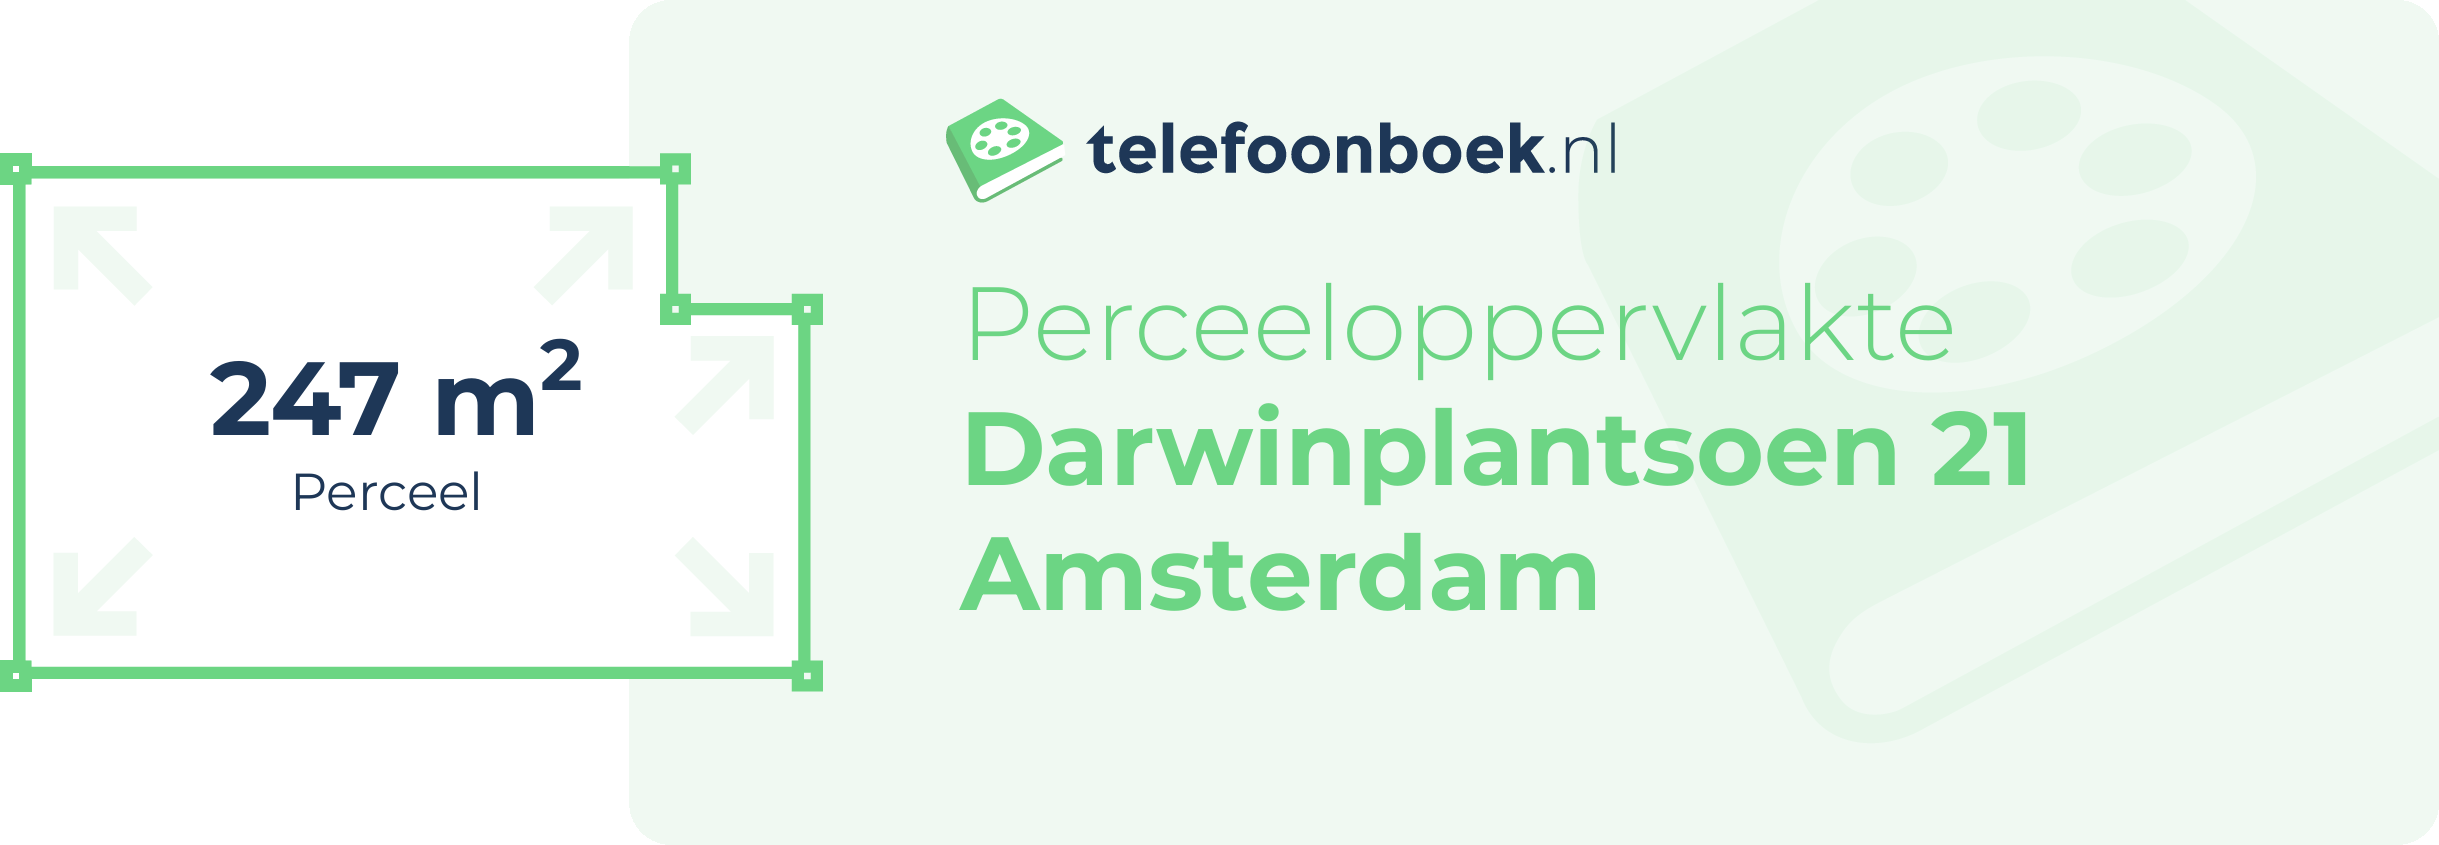 Perceeloppervlakte Darwinplantsoen 21 Amsterdam